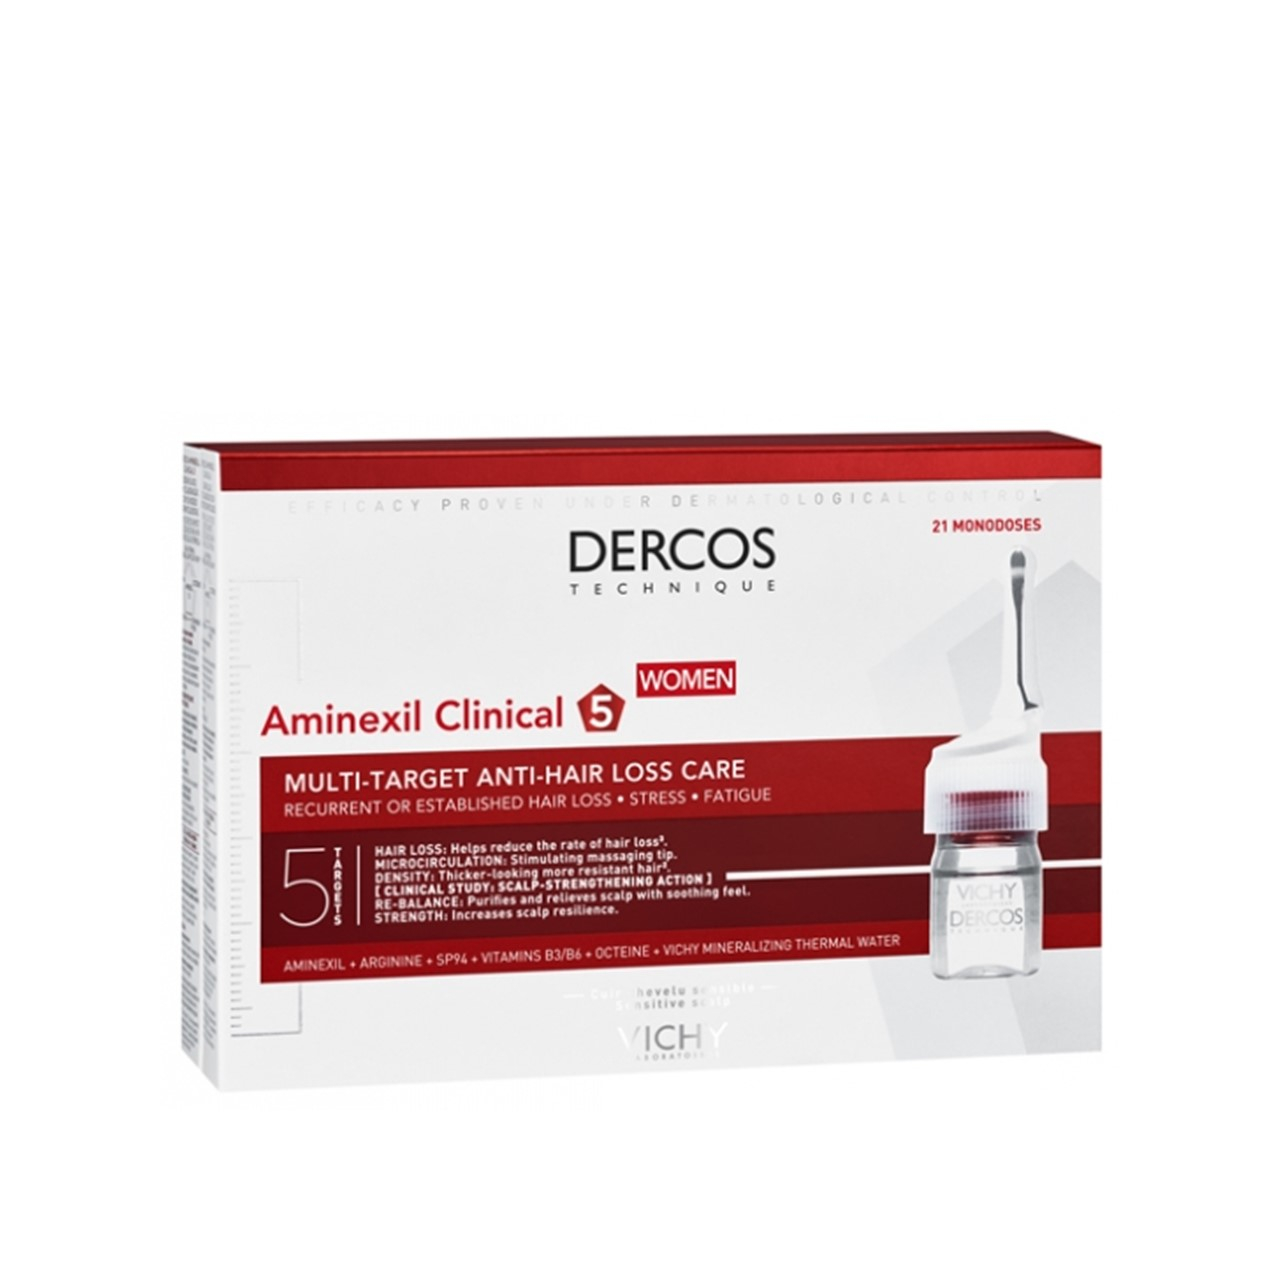 Vichy Dercos Aminexil Clinical 5 Anti-Hair Loss Ampoules Women x21